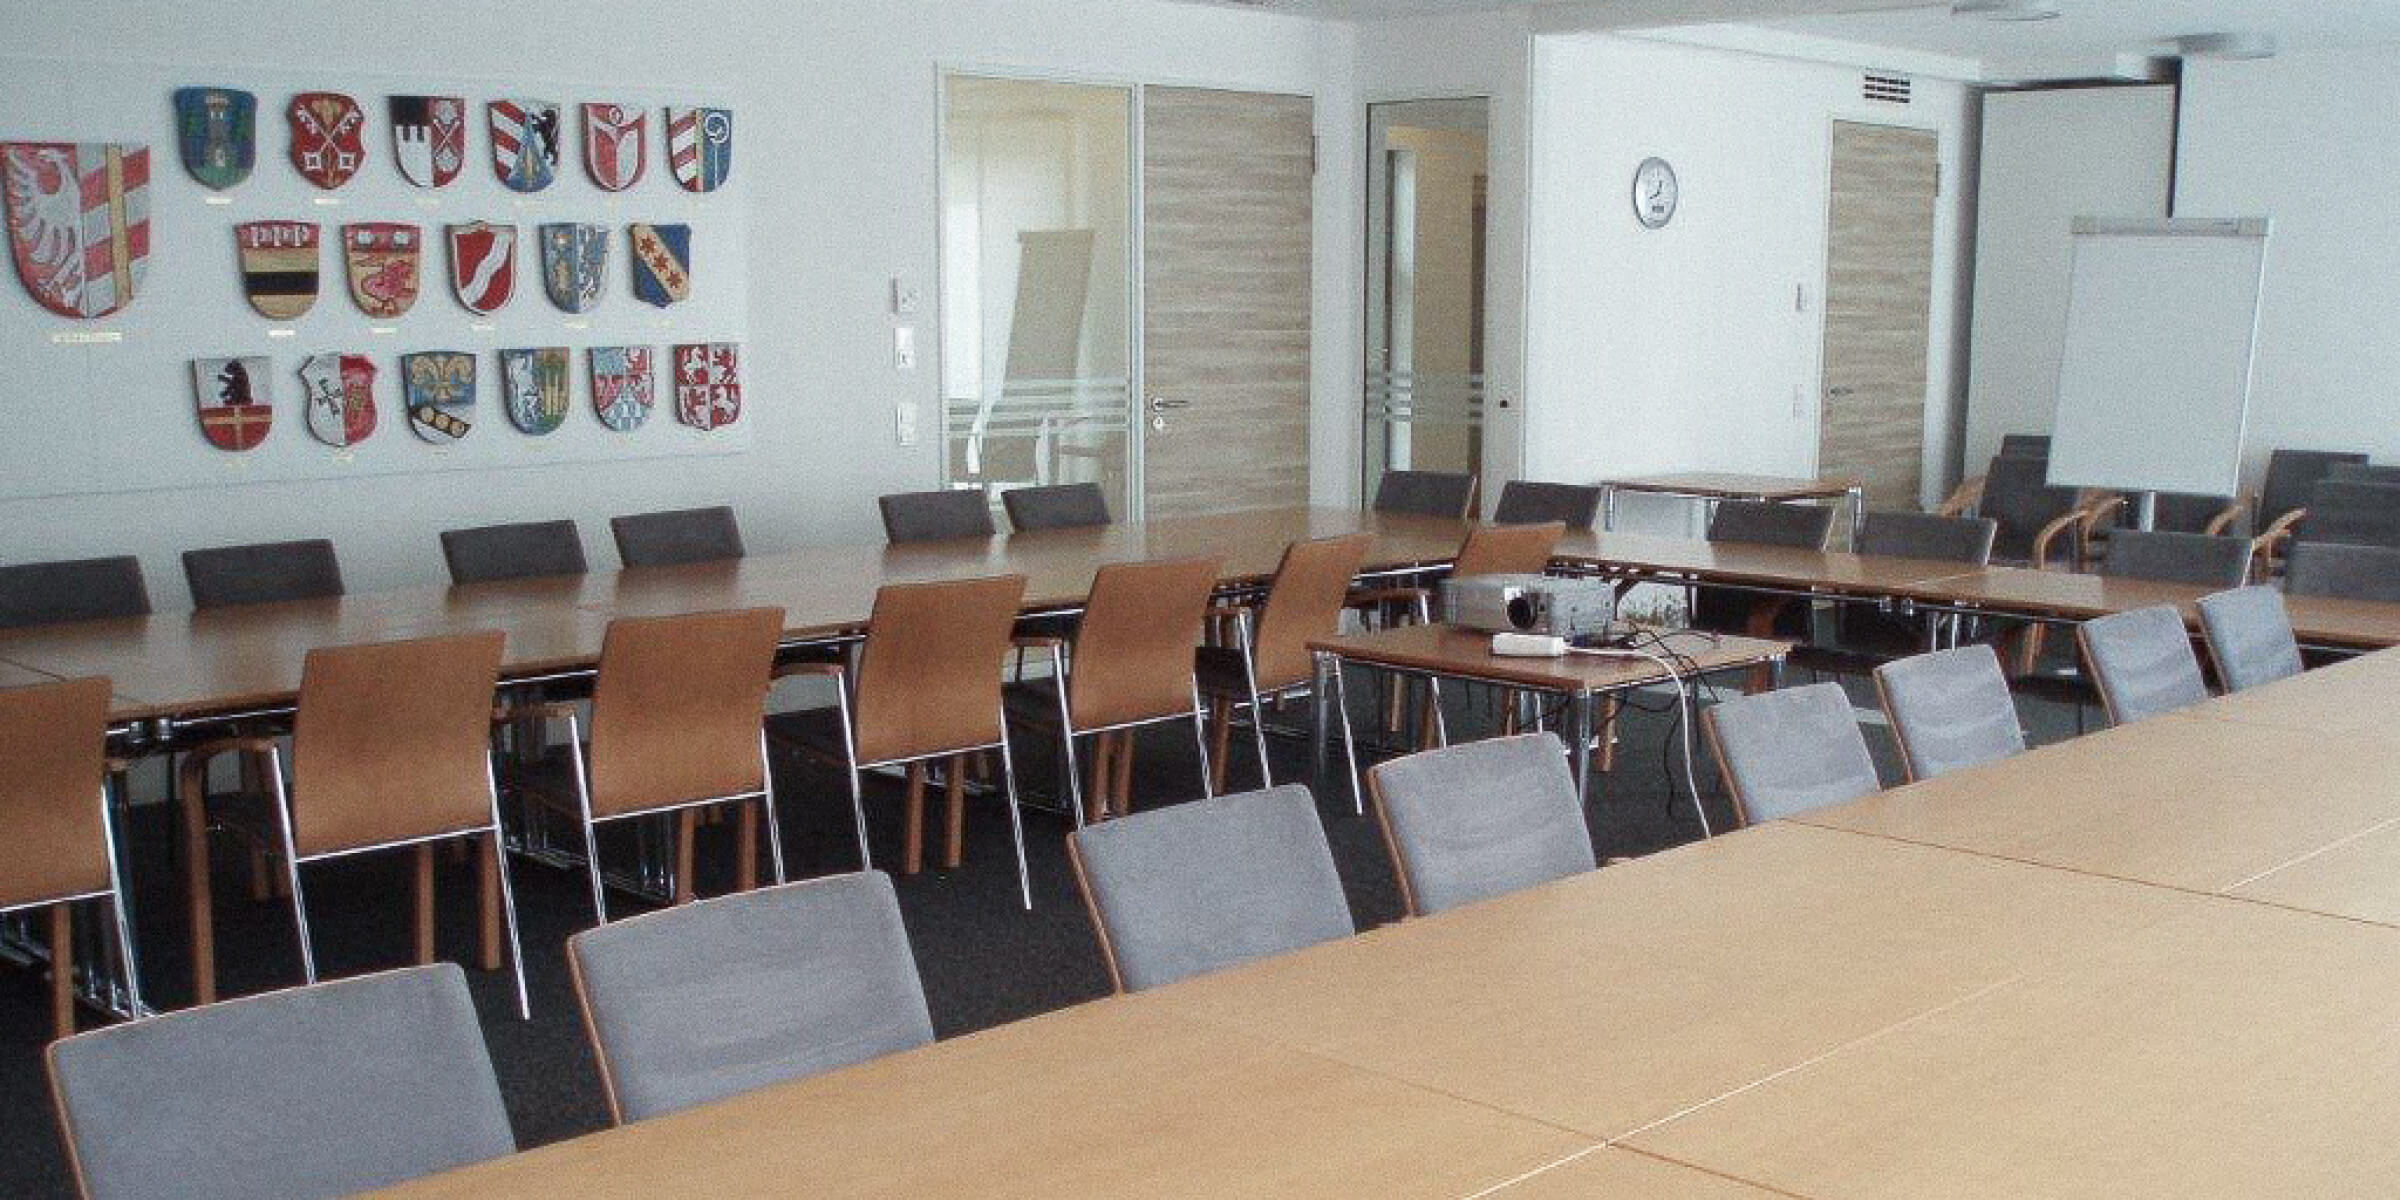 Bild zeigt einen Konferenzraum